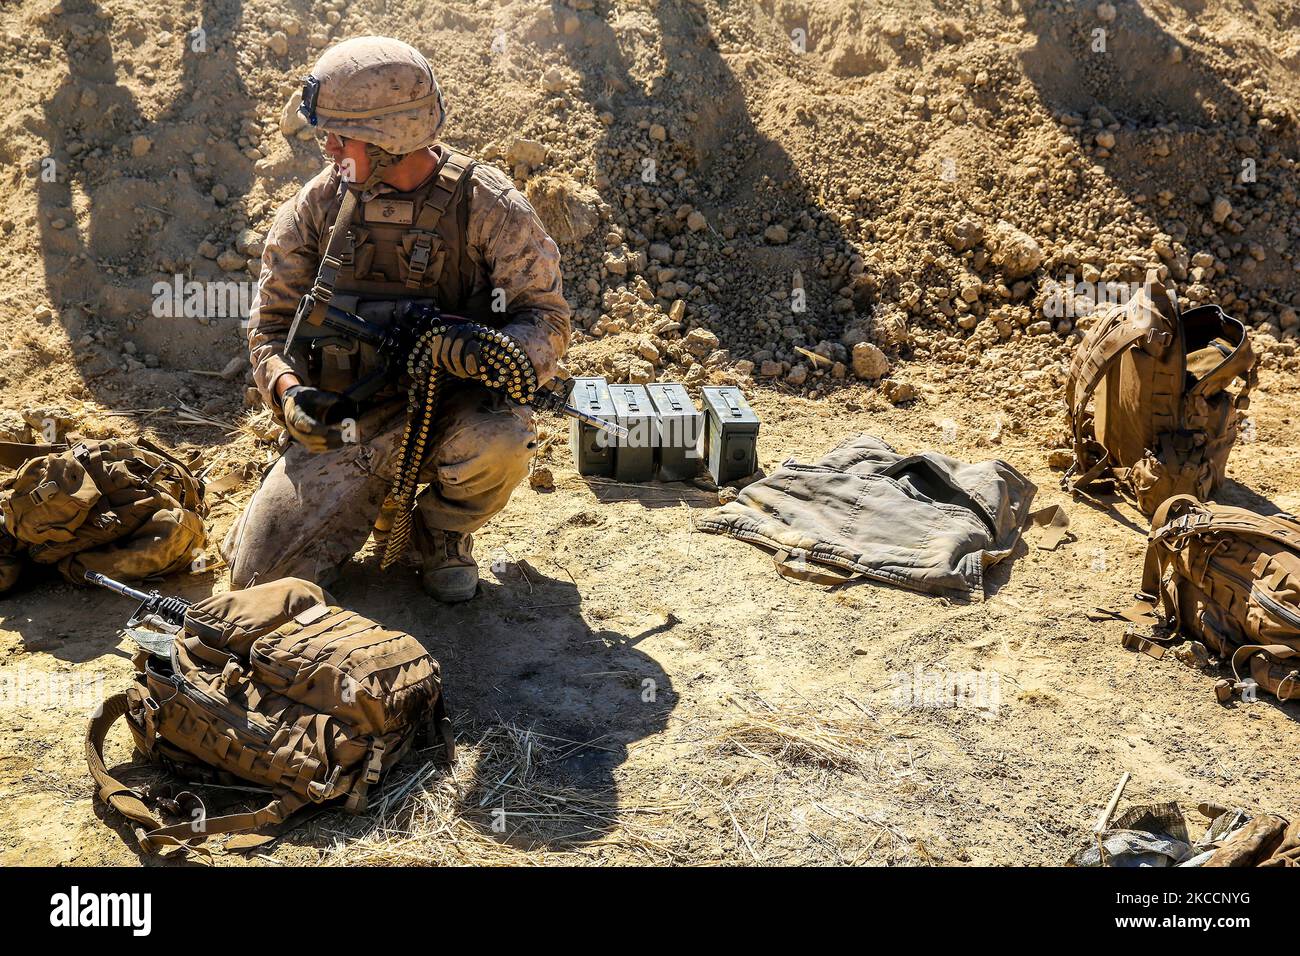 U.S. Marine picks up rounds to resupply a machine gunner. Stock Photo